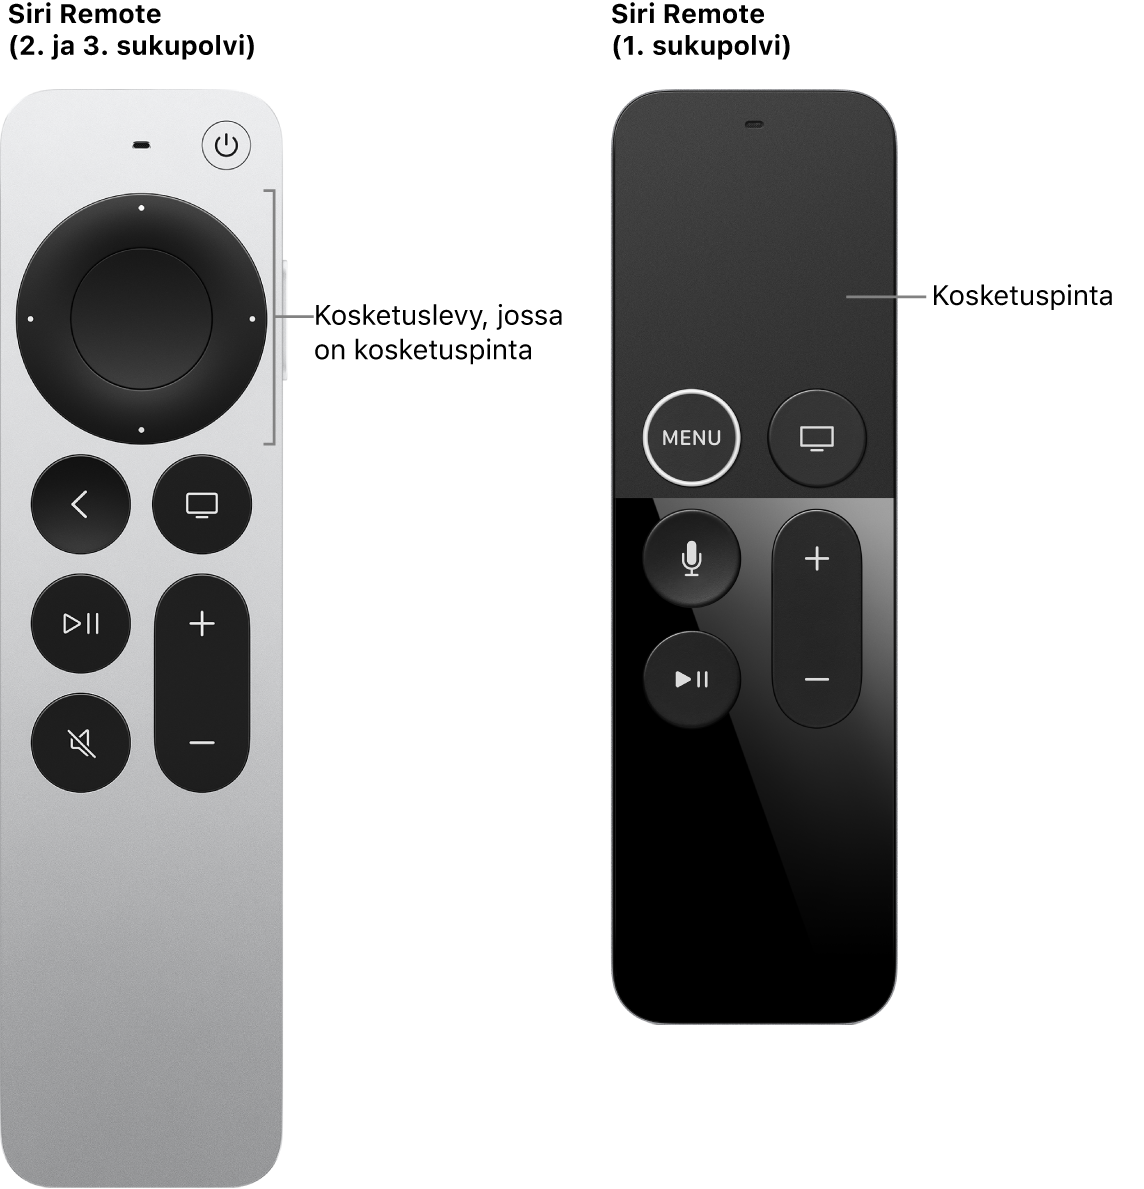 Siri Remote (2. ja 3. sukupolvi), jossa on kosketuslevy, ja Siri Remote (1. sukupolvi), jossa on kosketuspinta